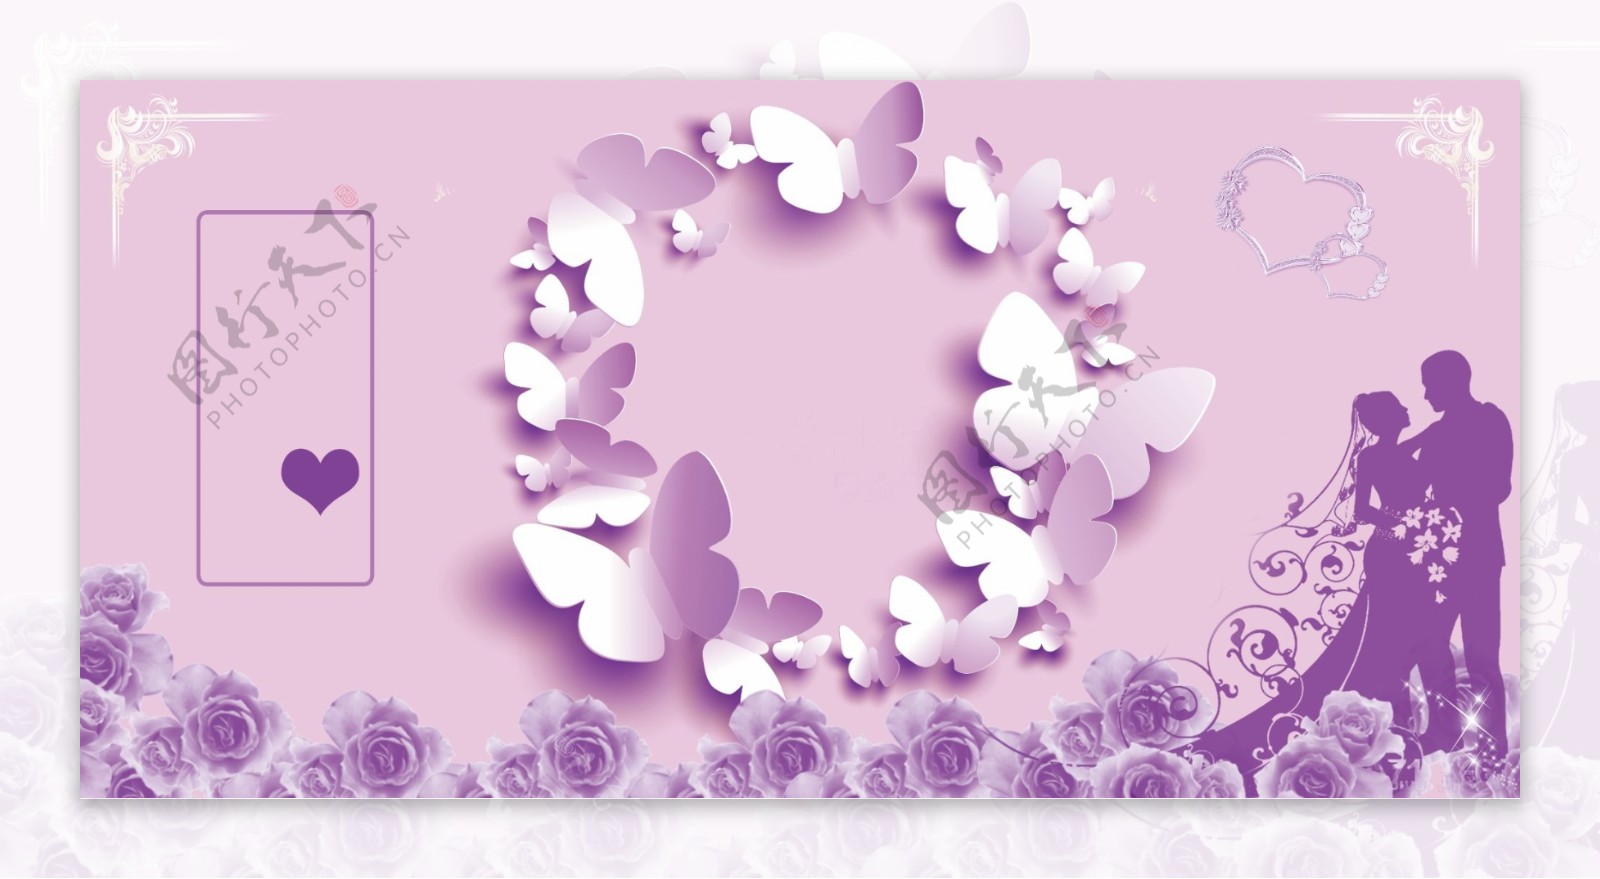 浪漫紫色玫瑰婚礼背景